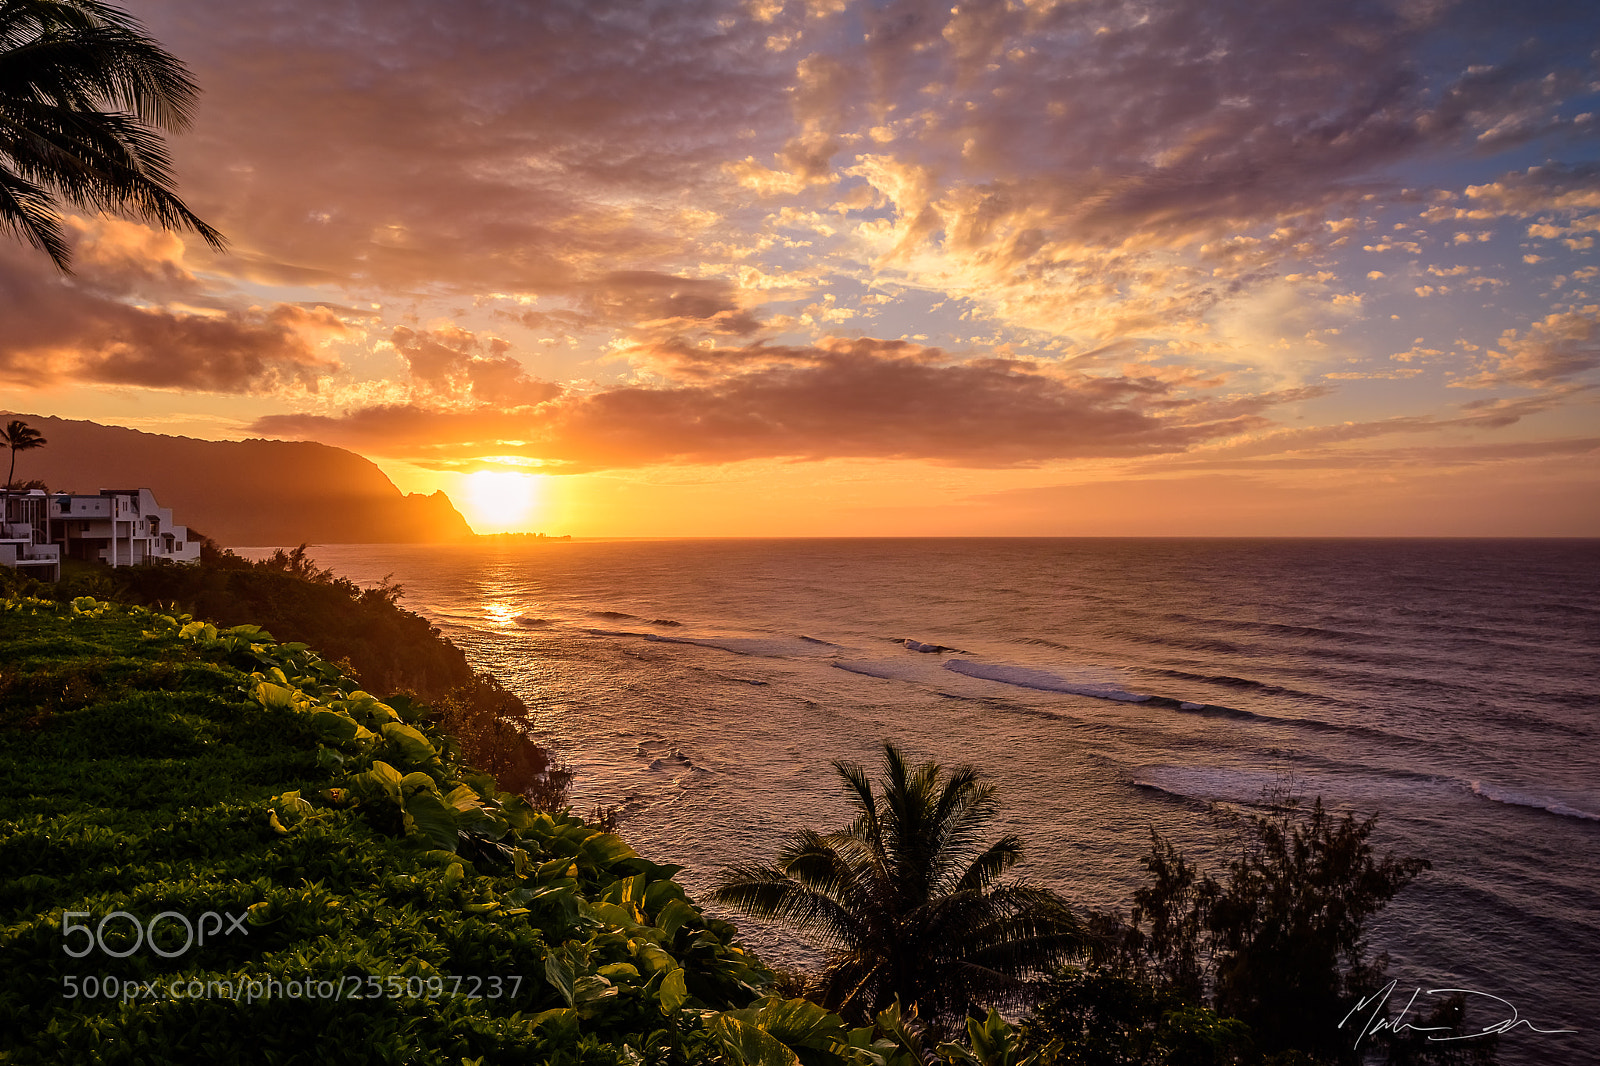 Nikon D810 sample photo. Kauai sunset photography